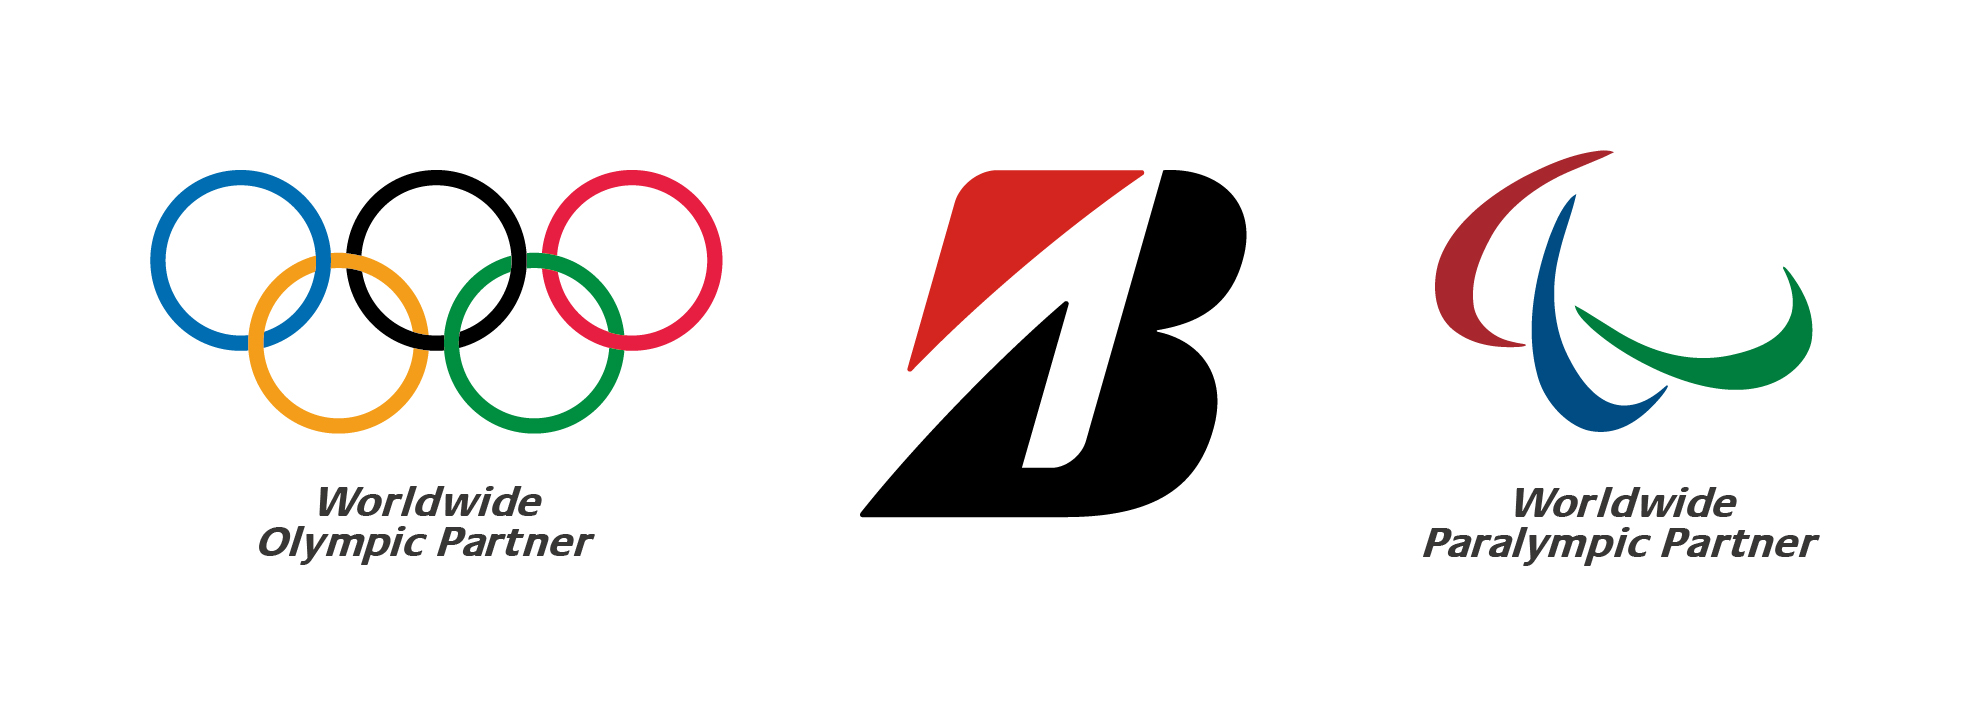 Logos of the Olympics, the Paralympics, and Bridgestone